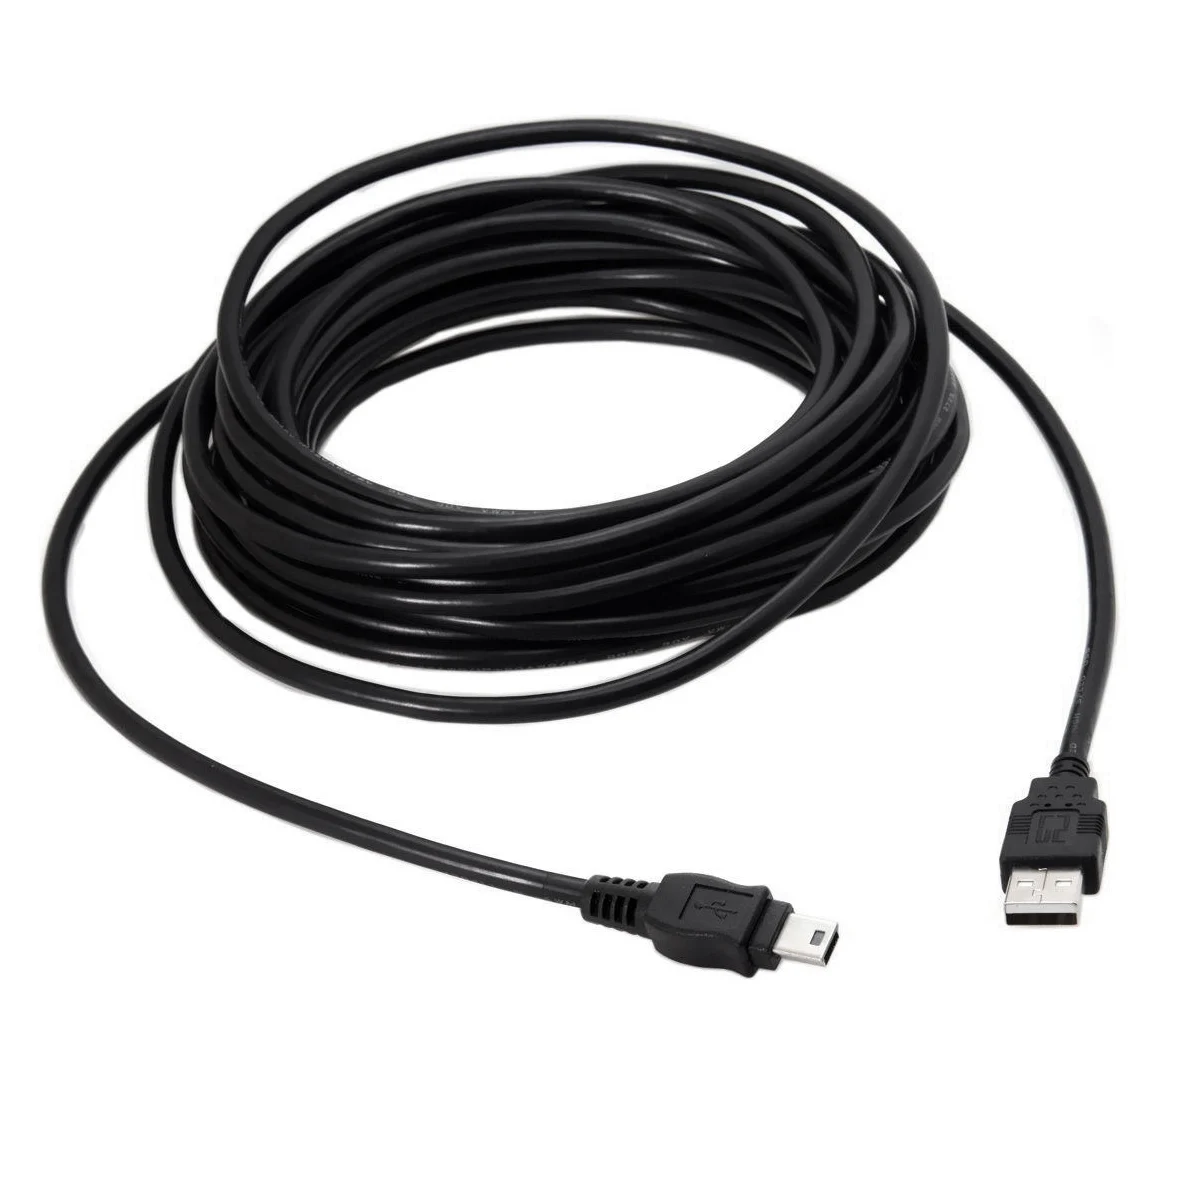 10 подходит для sony PS3 USB кабель Контроллер зарядный шнур для Playstation 3 беспроводной DualShock SIXAXIS CECHZC2U джойстик Дата